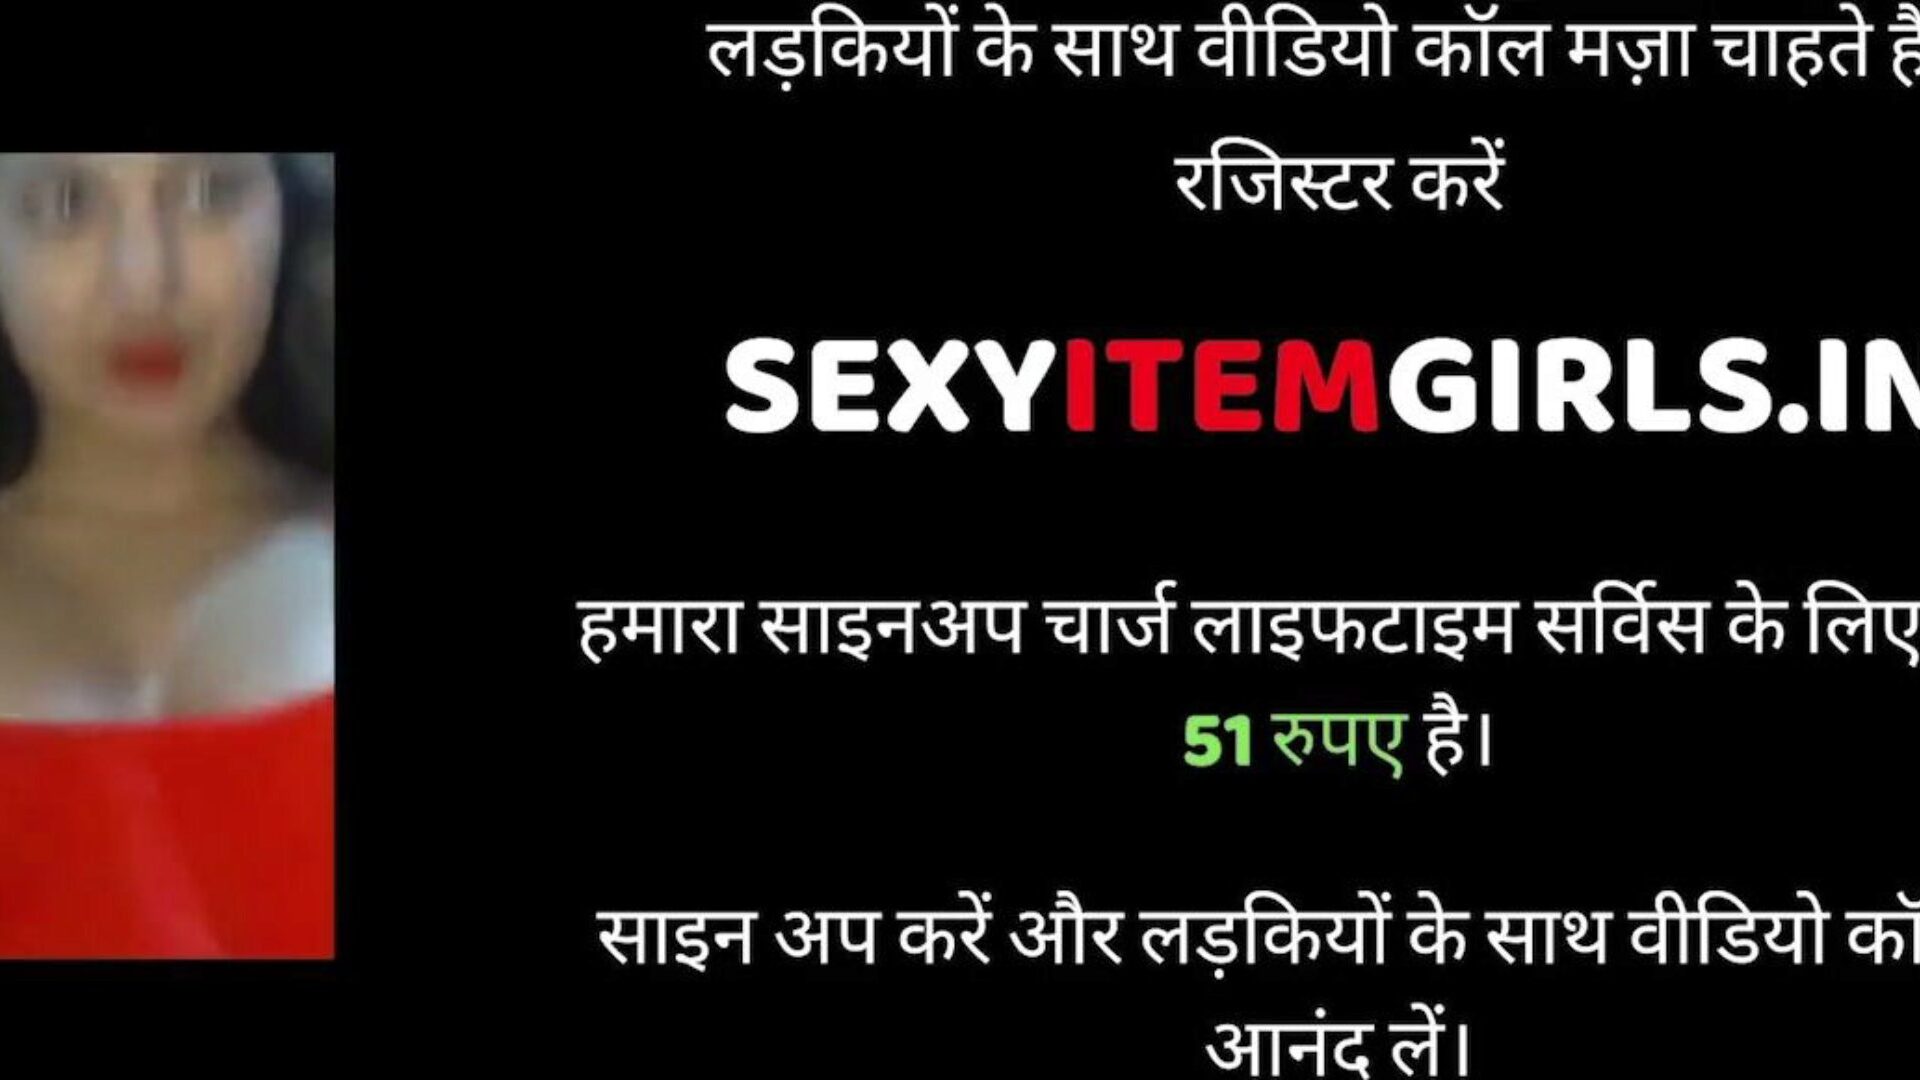 sexe indien mari et femme, sexe gratuit xnxx porn 95: xhamster regarde une vidéo de sexe indien mari et femme sur xhamster, le plus gros site de tubes hd bosse avec des tonnes de sexe gratuit pour tous xnxx hardcore et sperme dans des films pornographiques de chatte